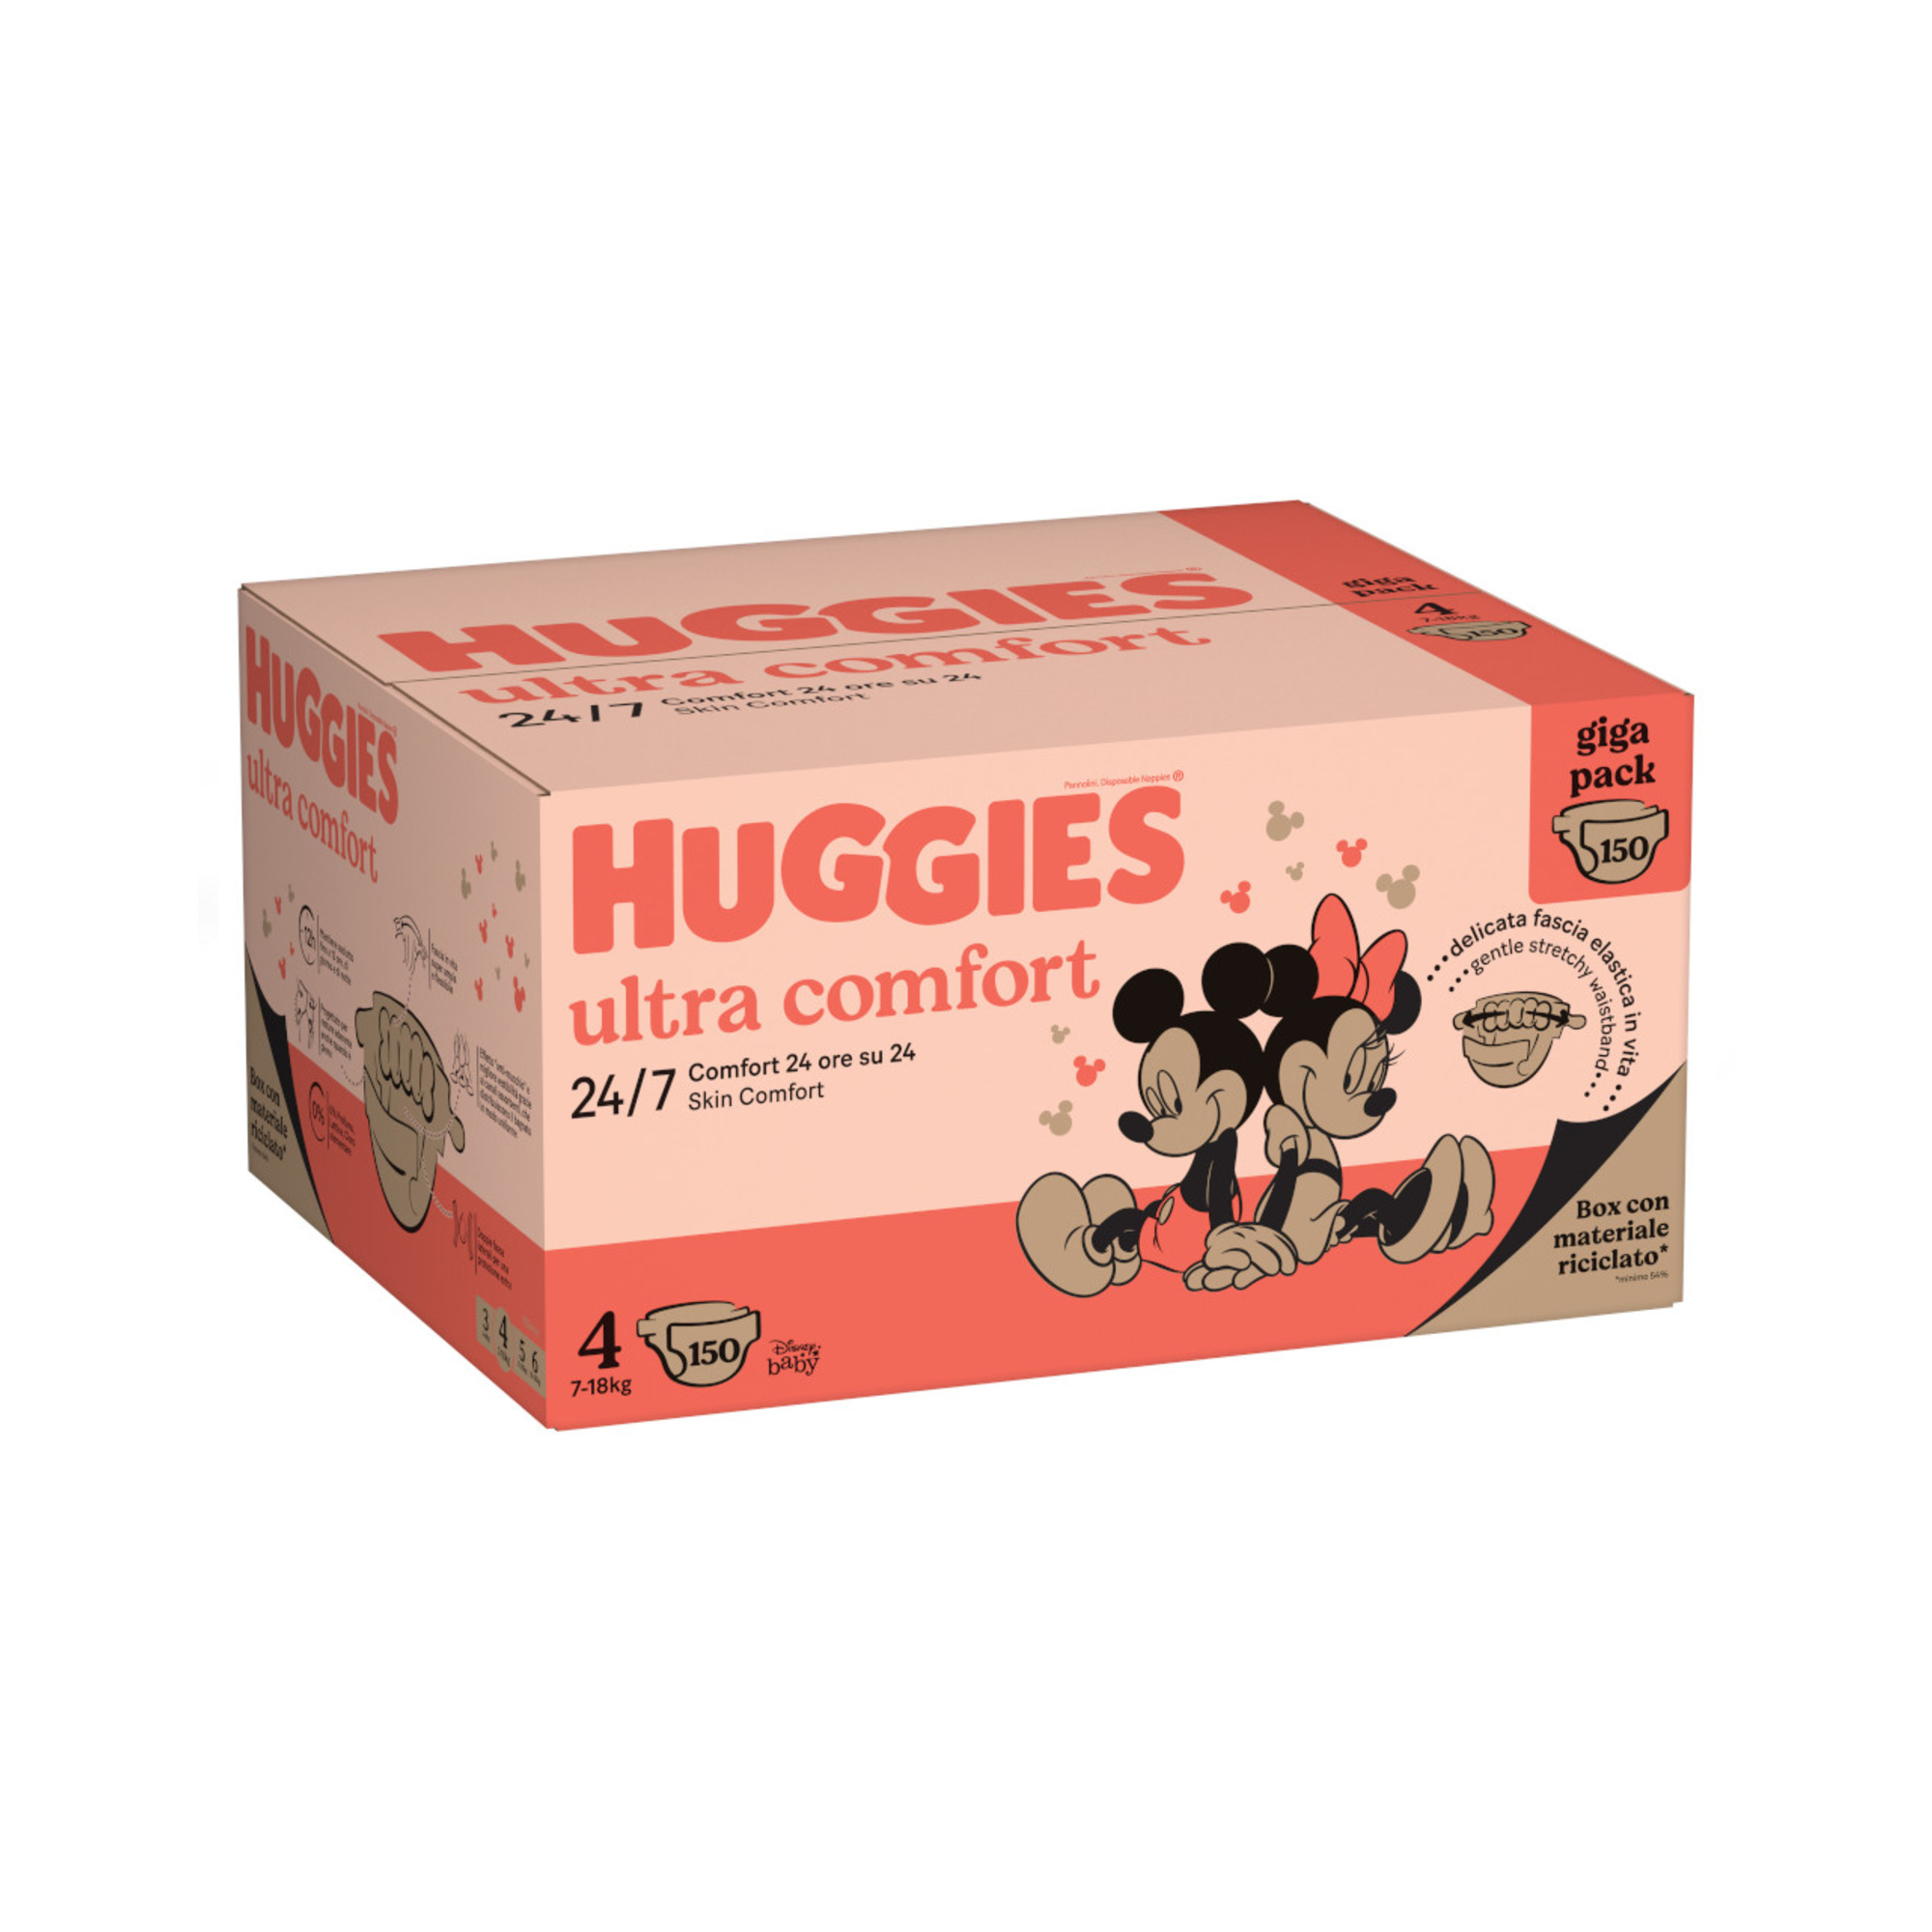 Gigapack tg.4 150 pannolini - huggies ultra comfort - Huggies